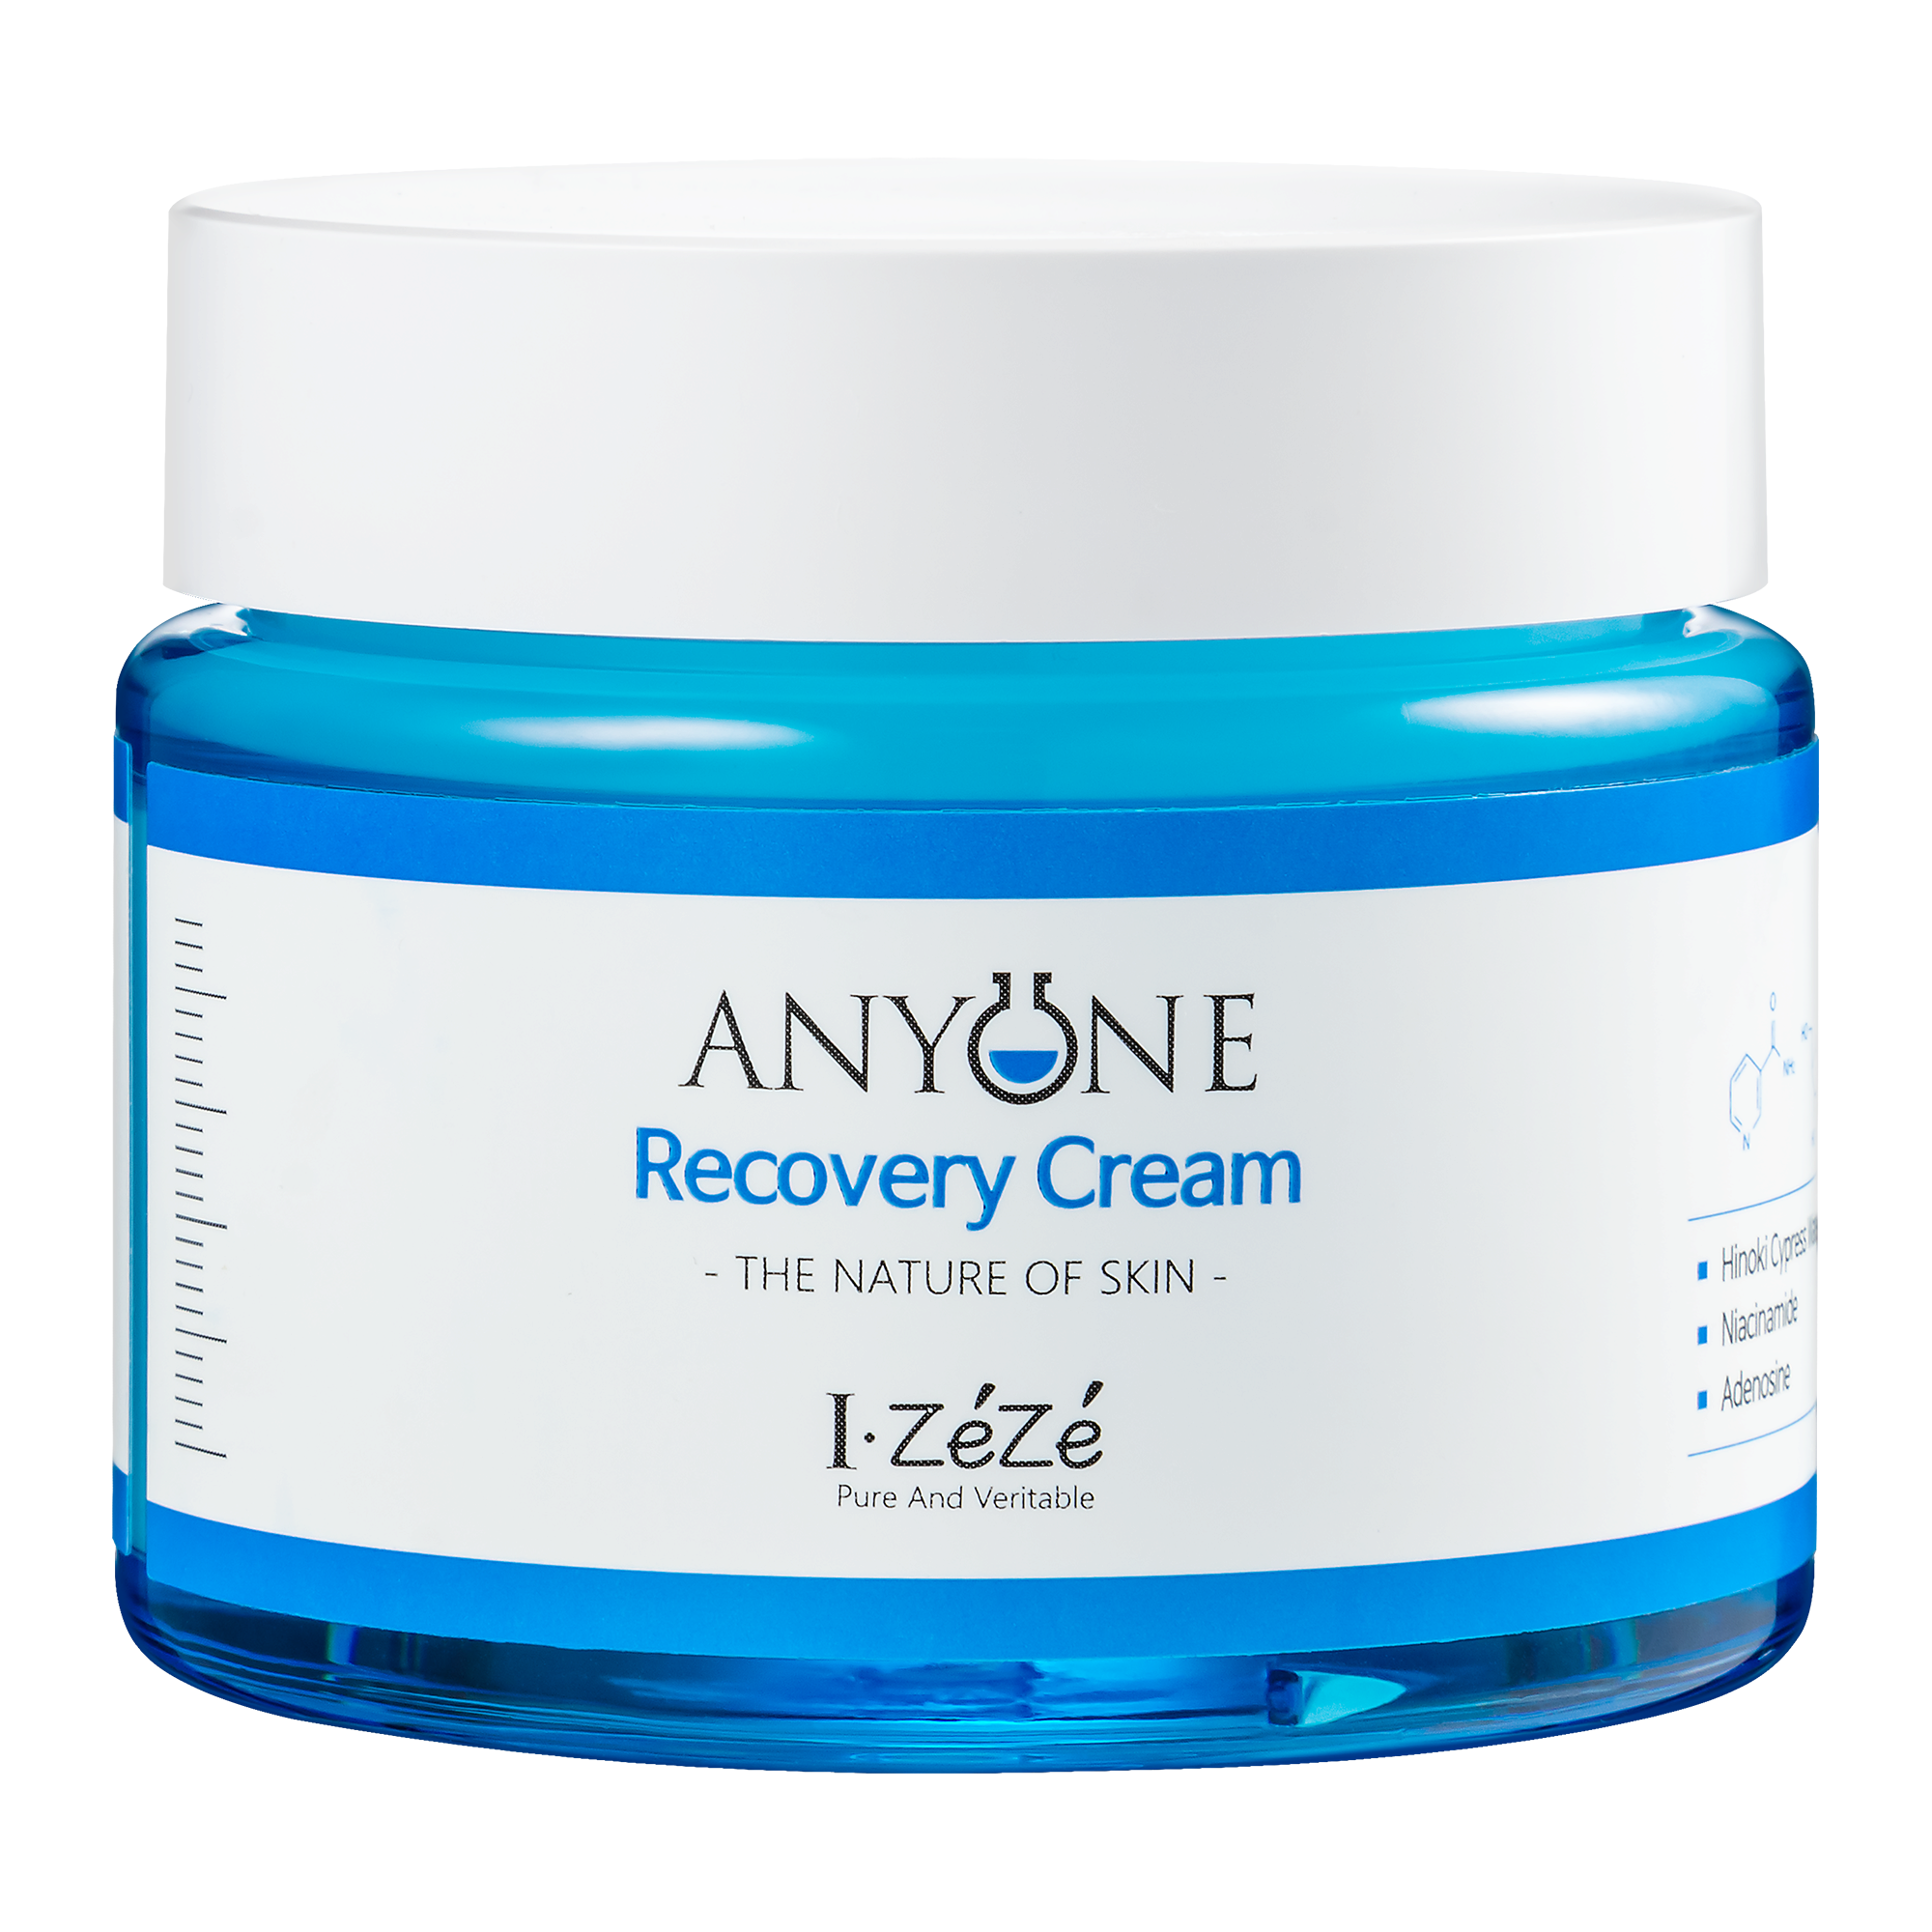 izeze anyone recovery cream Korea facial skincare